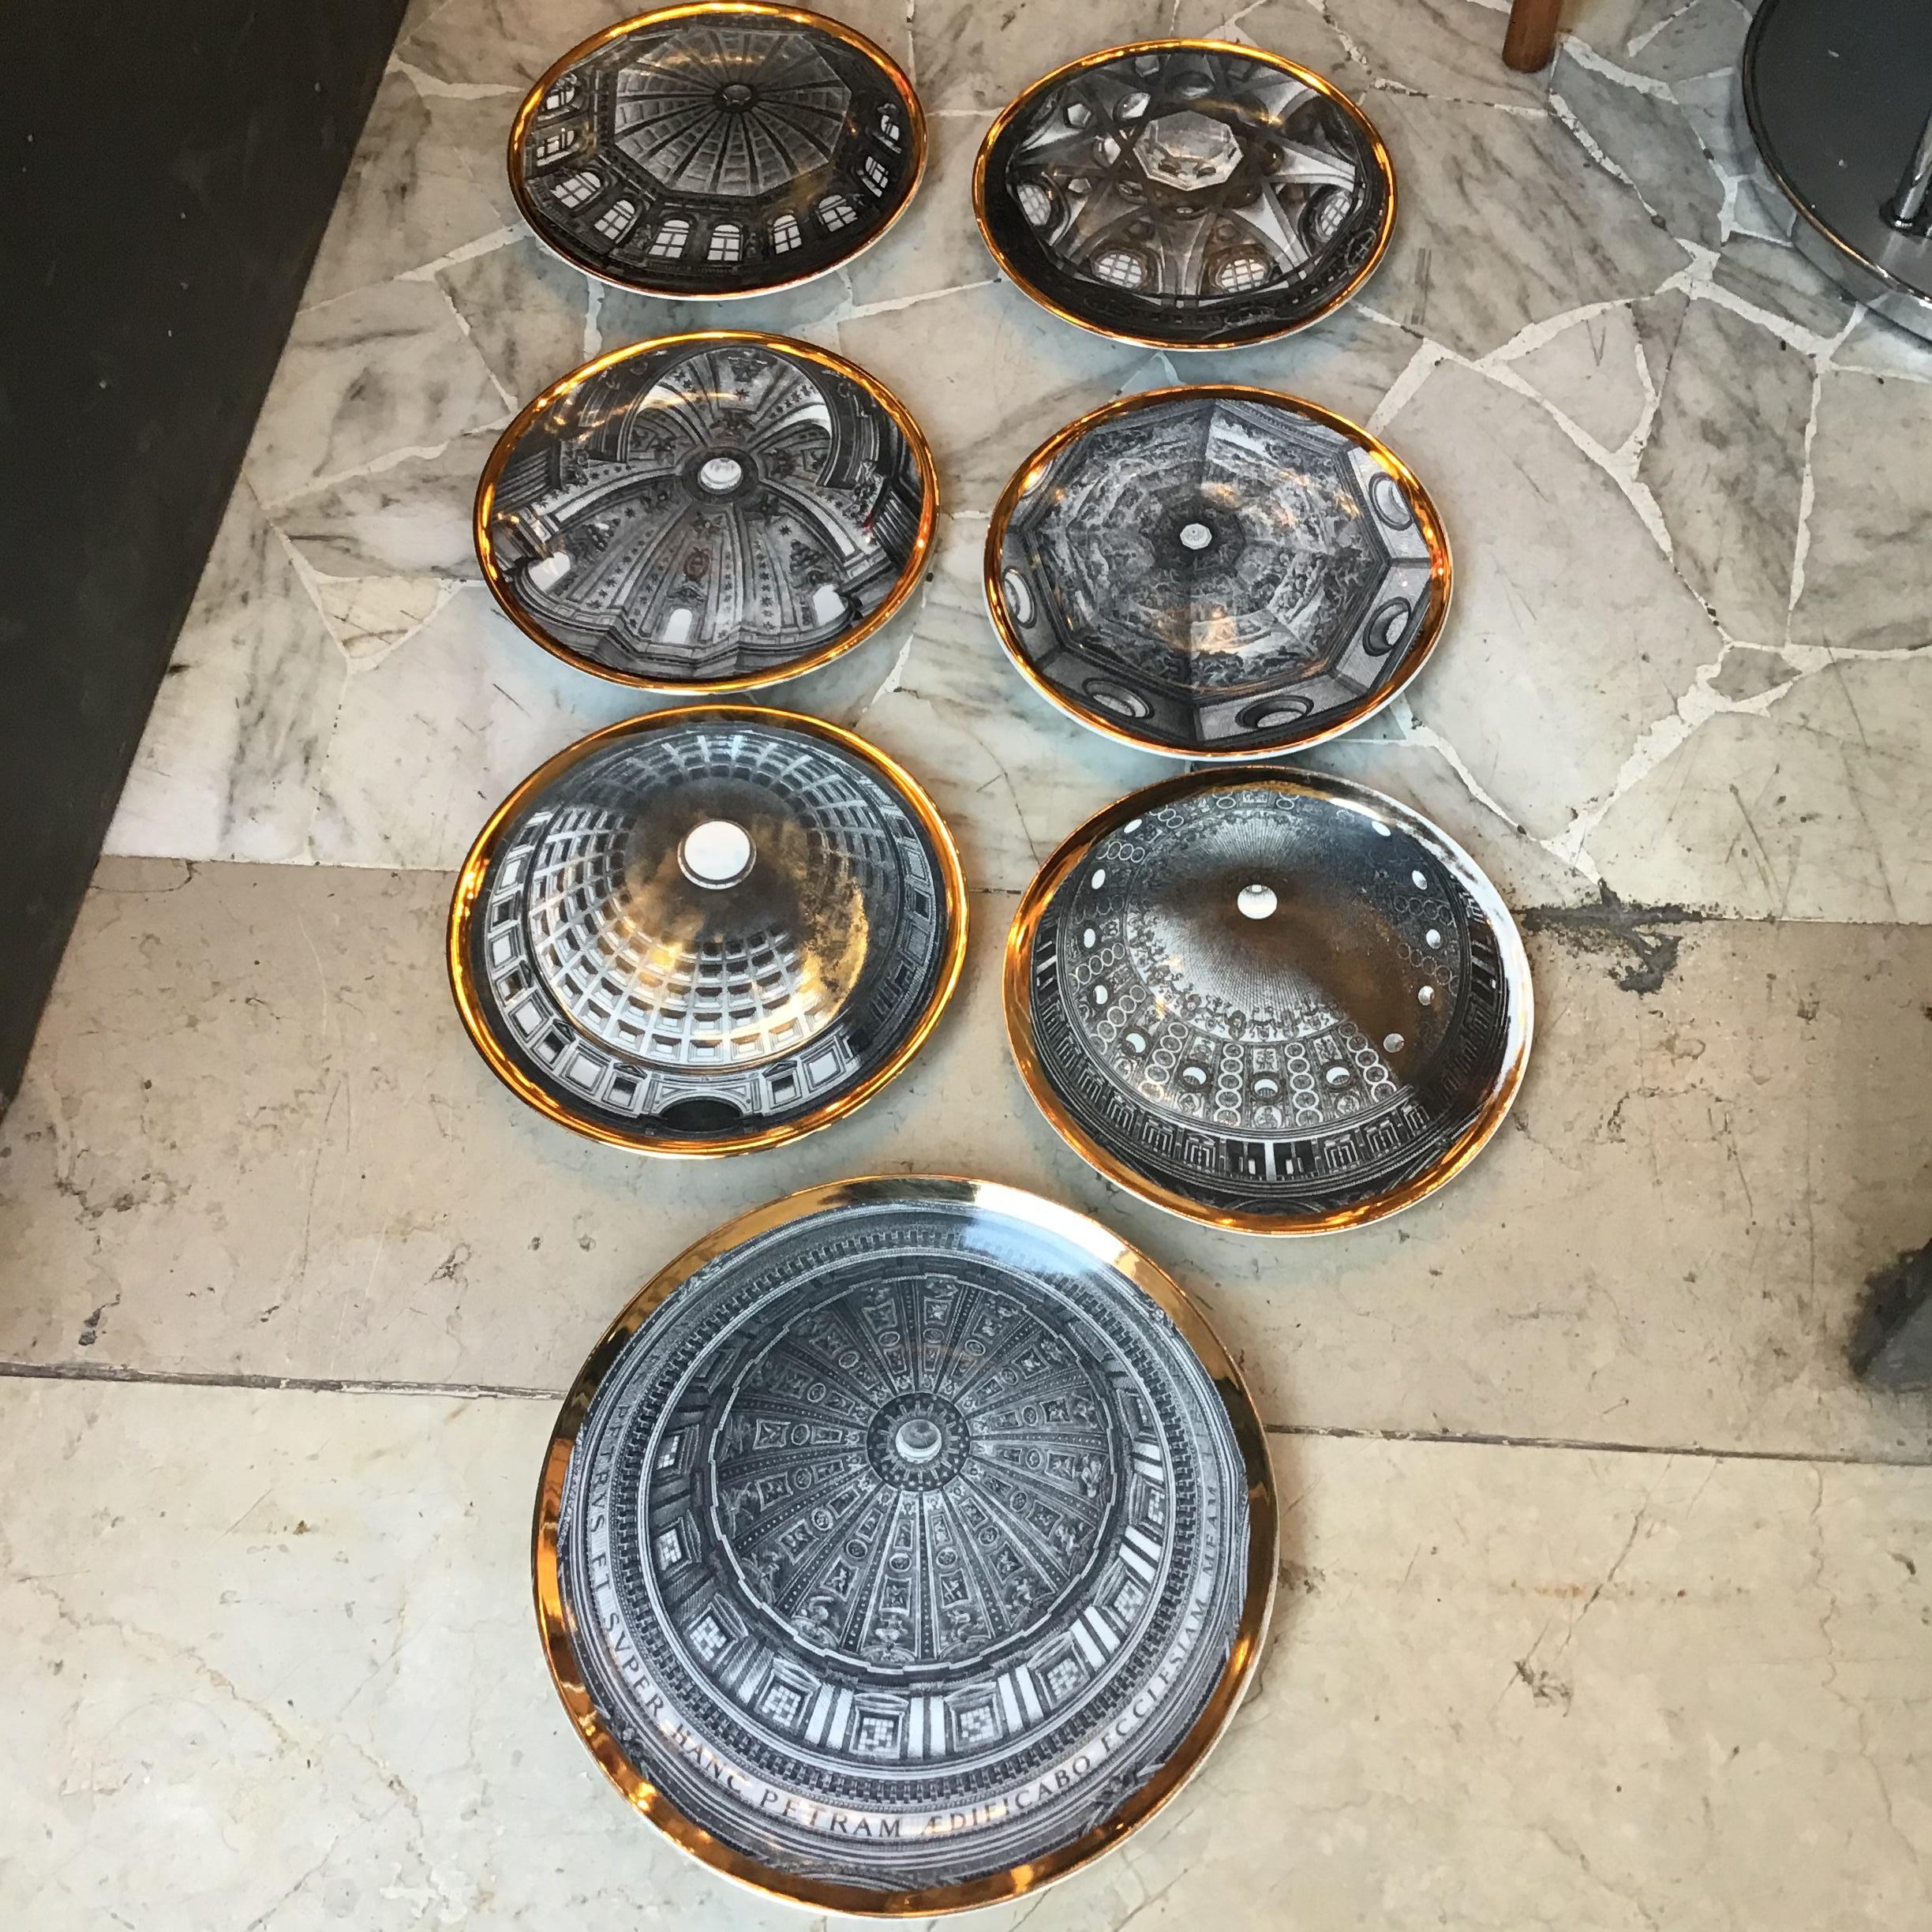 N. 7 plate series Cupole s ‘ Italia 
N.6 diameter 25 cm..
N 1 diameter 30 cm .